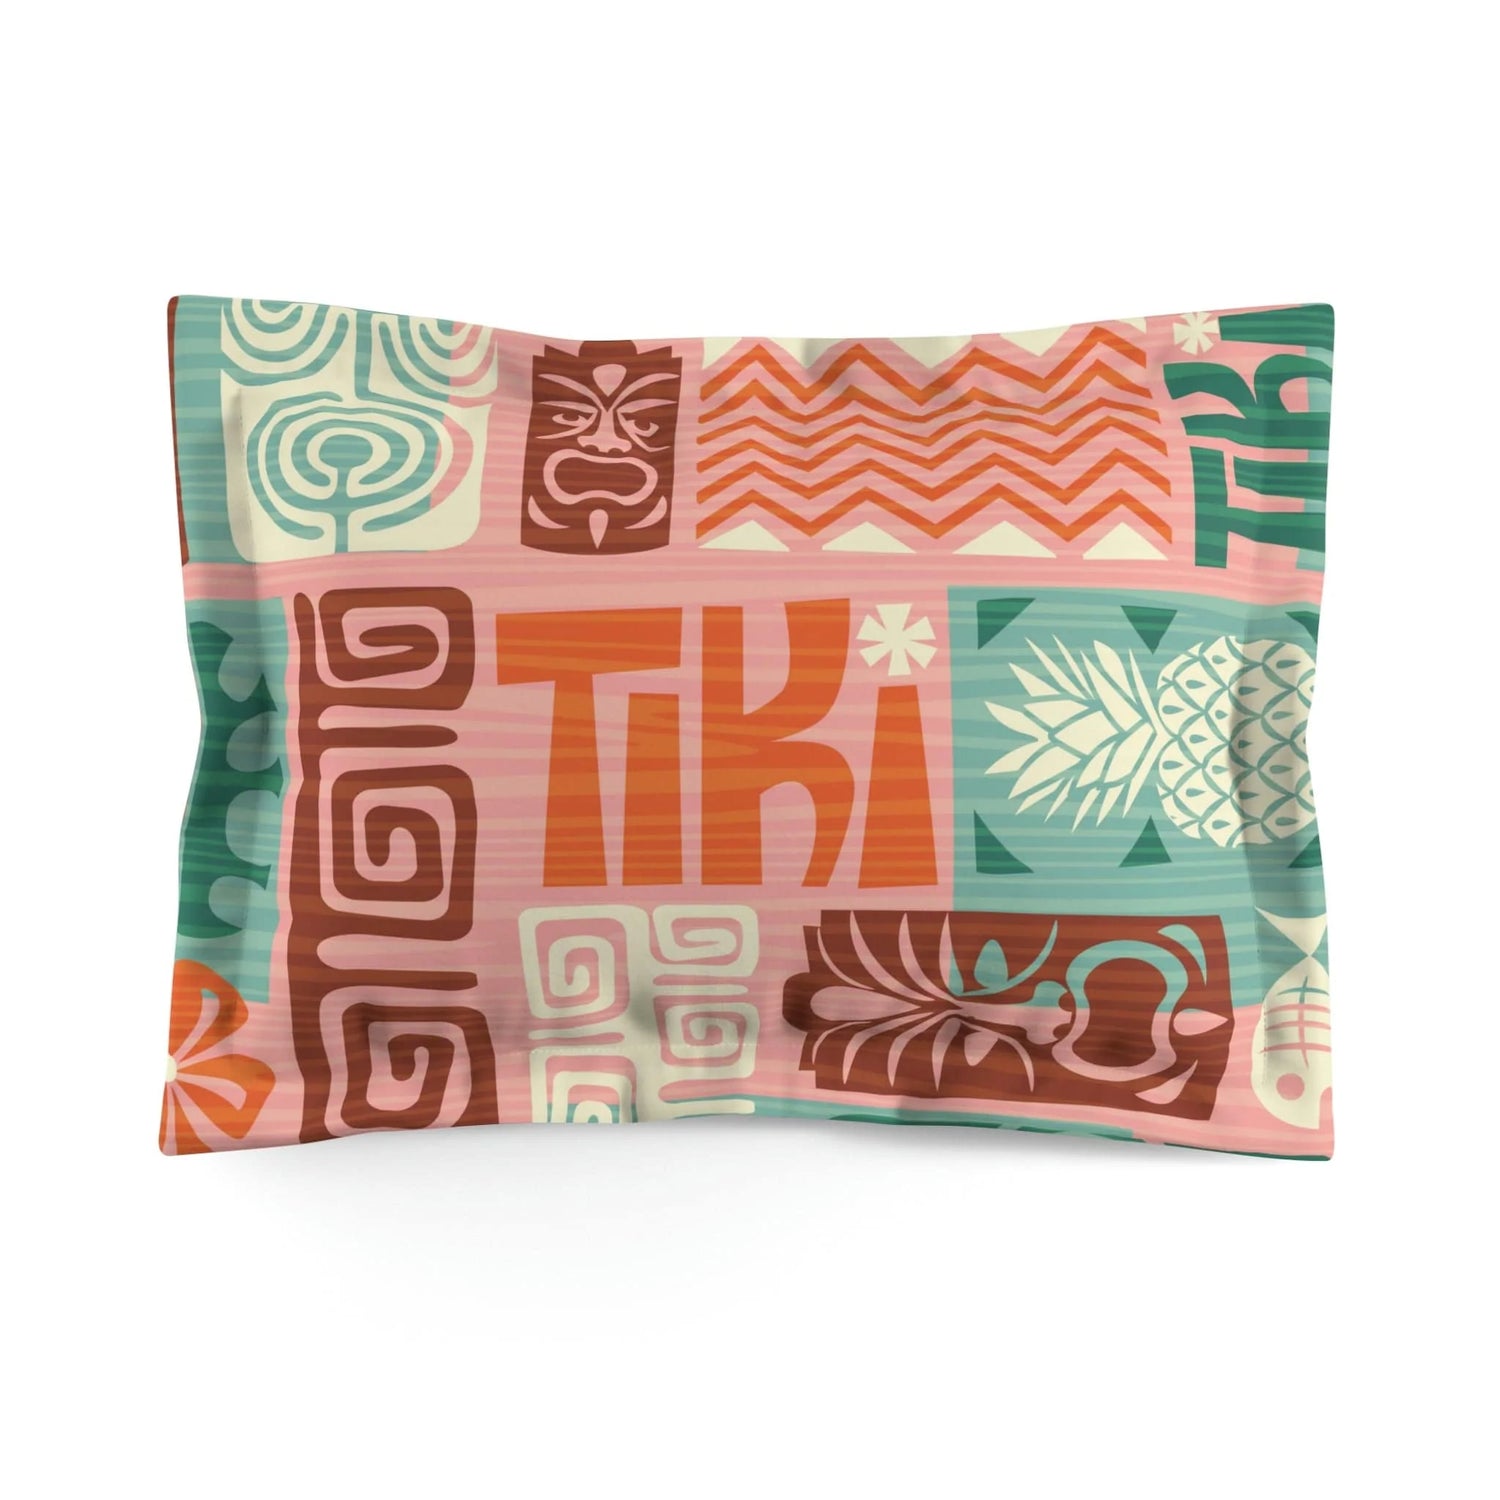 Retro Tiki Bedding, Tropical Tiki, Teal, Pink, Orange ,Funky Fun Floral, Pineapple, Tiki Microfiber Pillow Sham Home Decor Standard